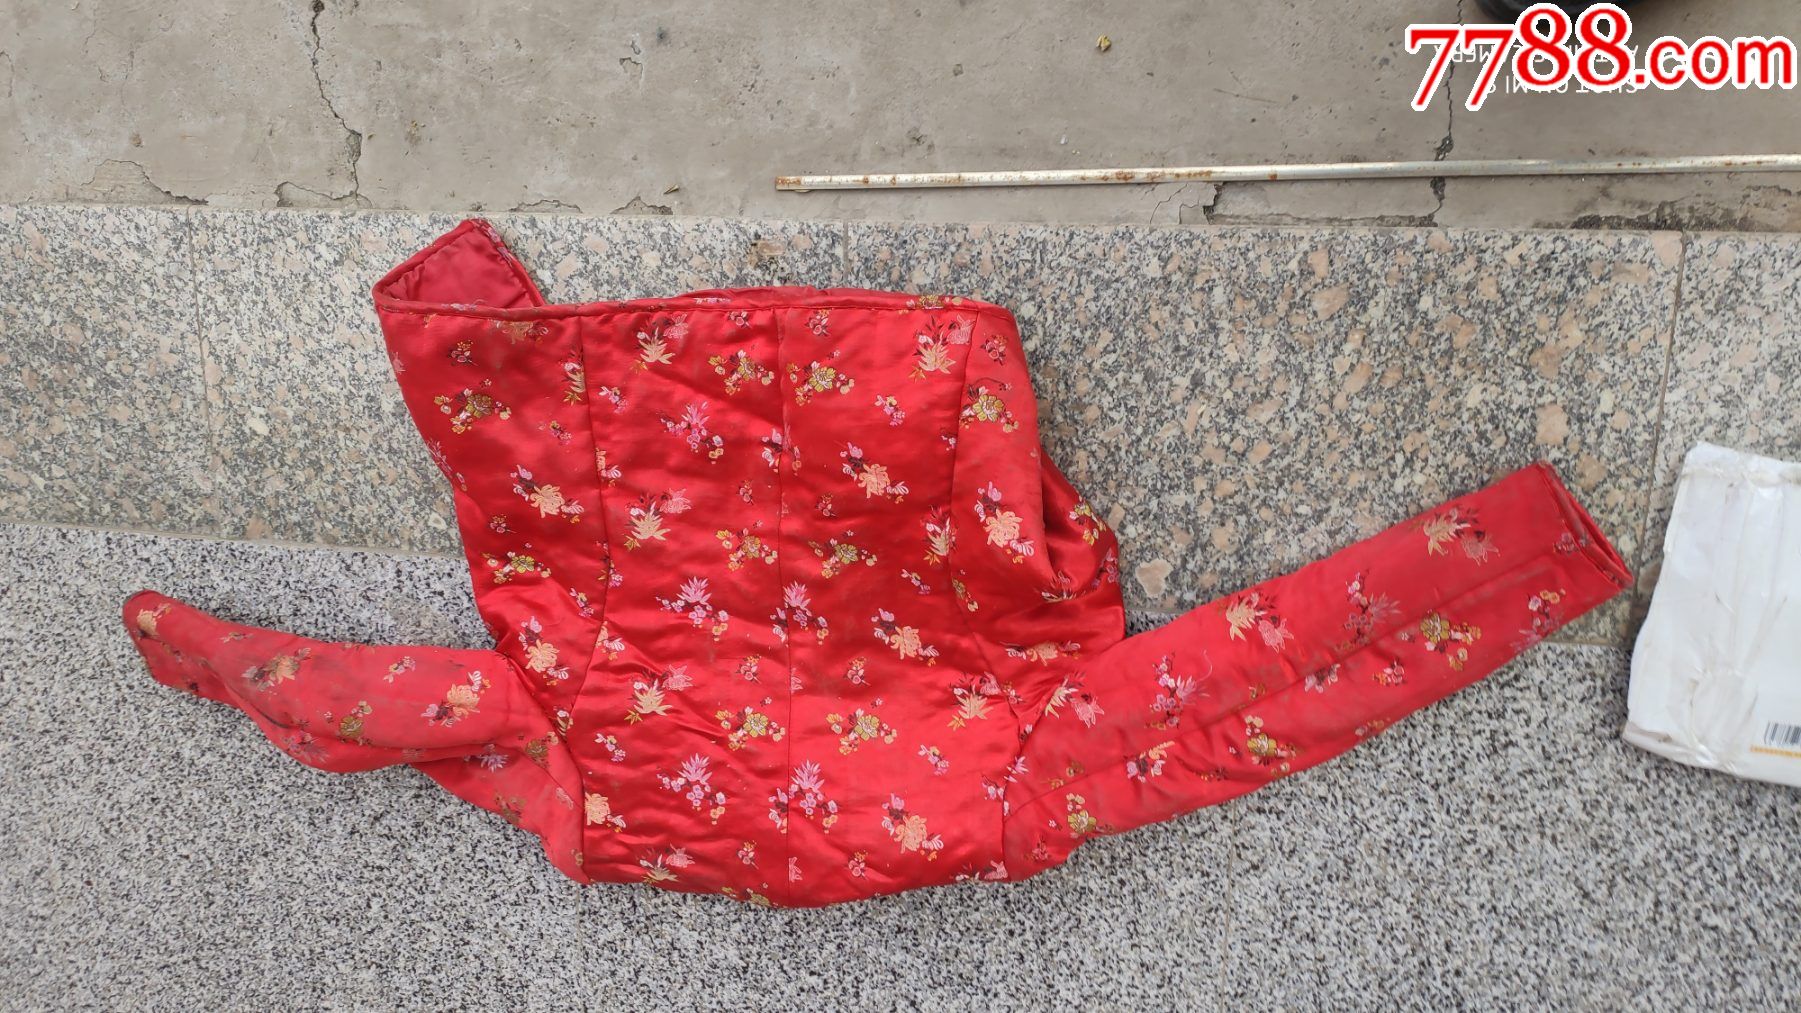 媳妇红缎棉袄图片图片